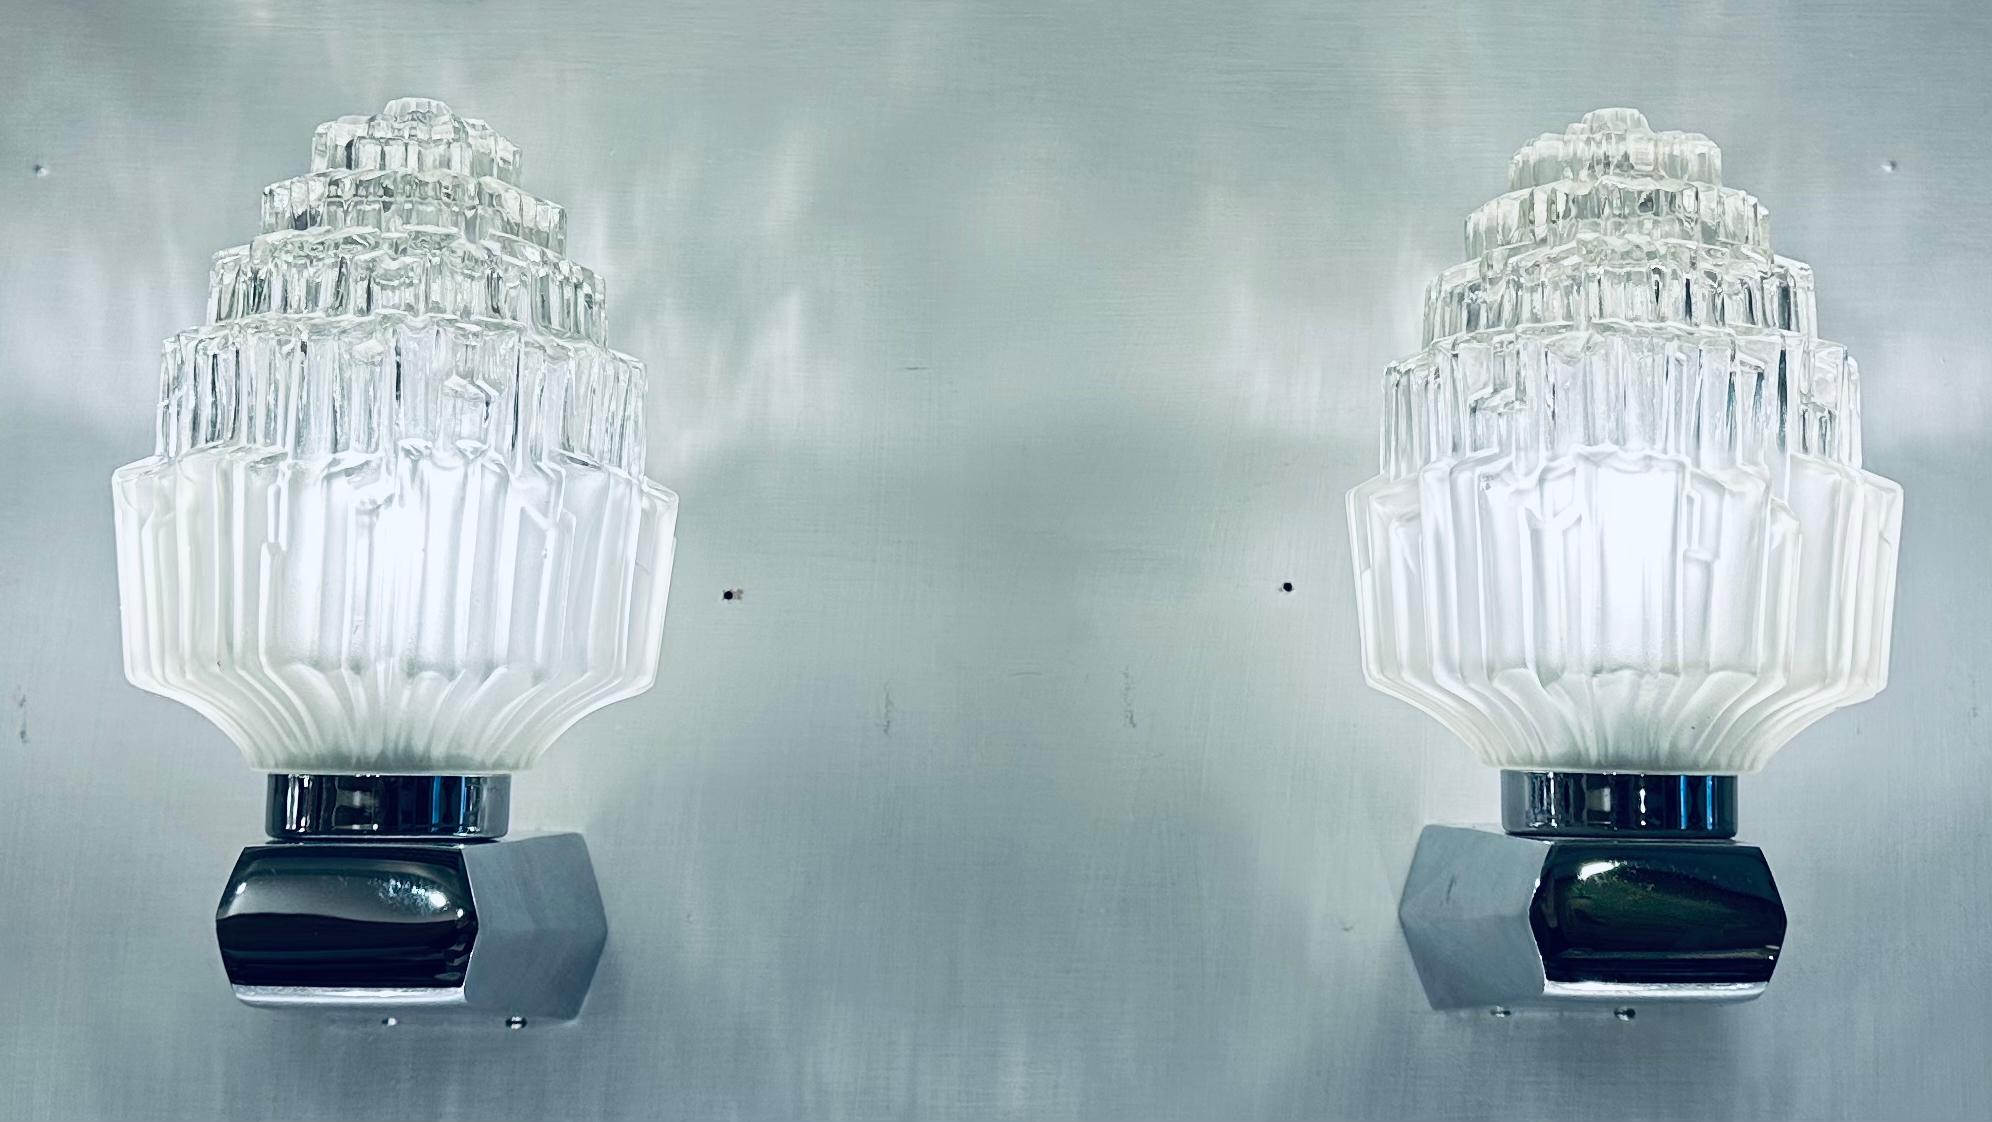 Ein atemberaubendes Paar Wandleuchten oder Wandleuchter, hergestellt in den 1950er Jahren von EJS Lighting Corp in Compton, Kalifornien, USA.

Der gläserne Lampenschirm wurde so geformt, dass er einem geschliffenen Kristall nachempfunden ist, der im